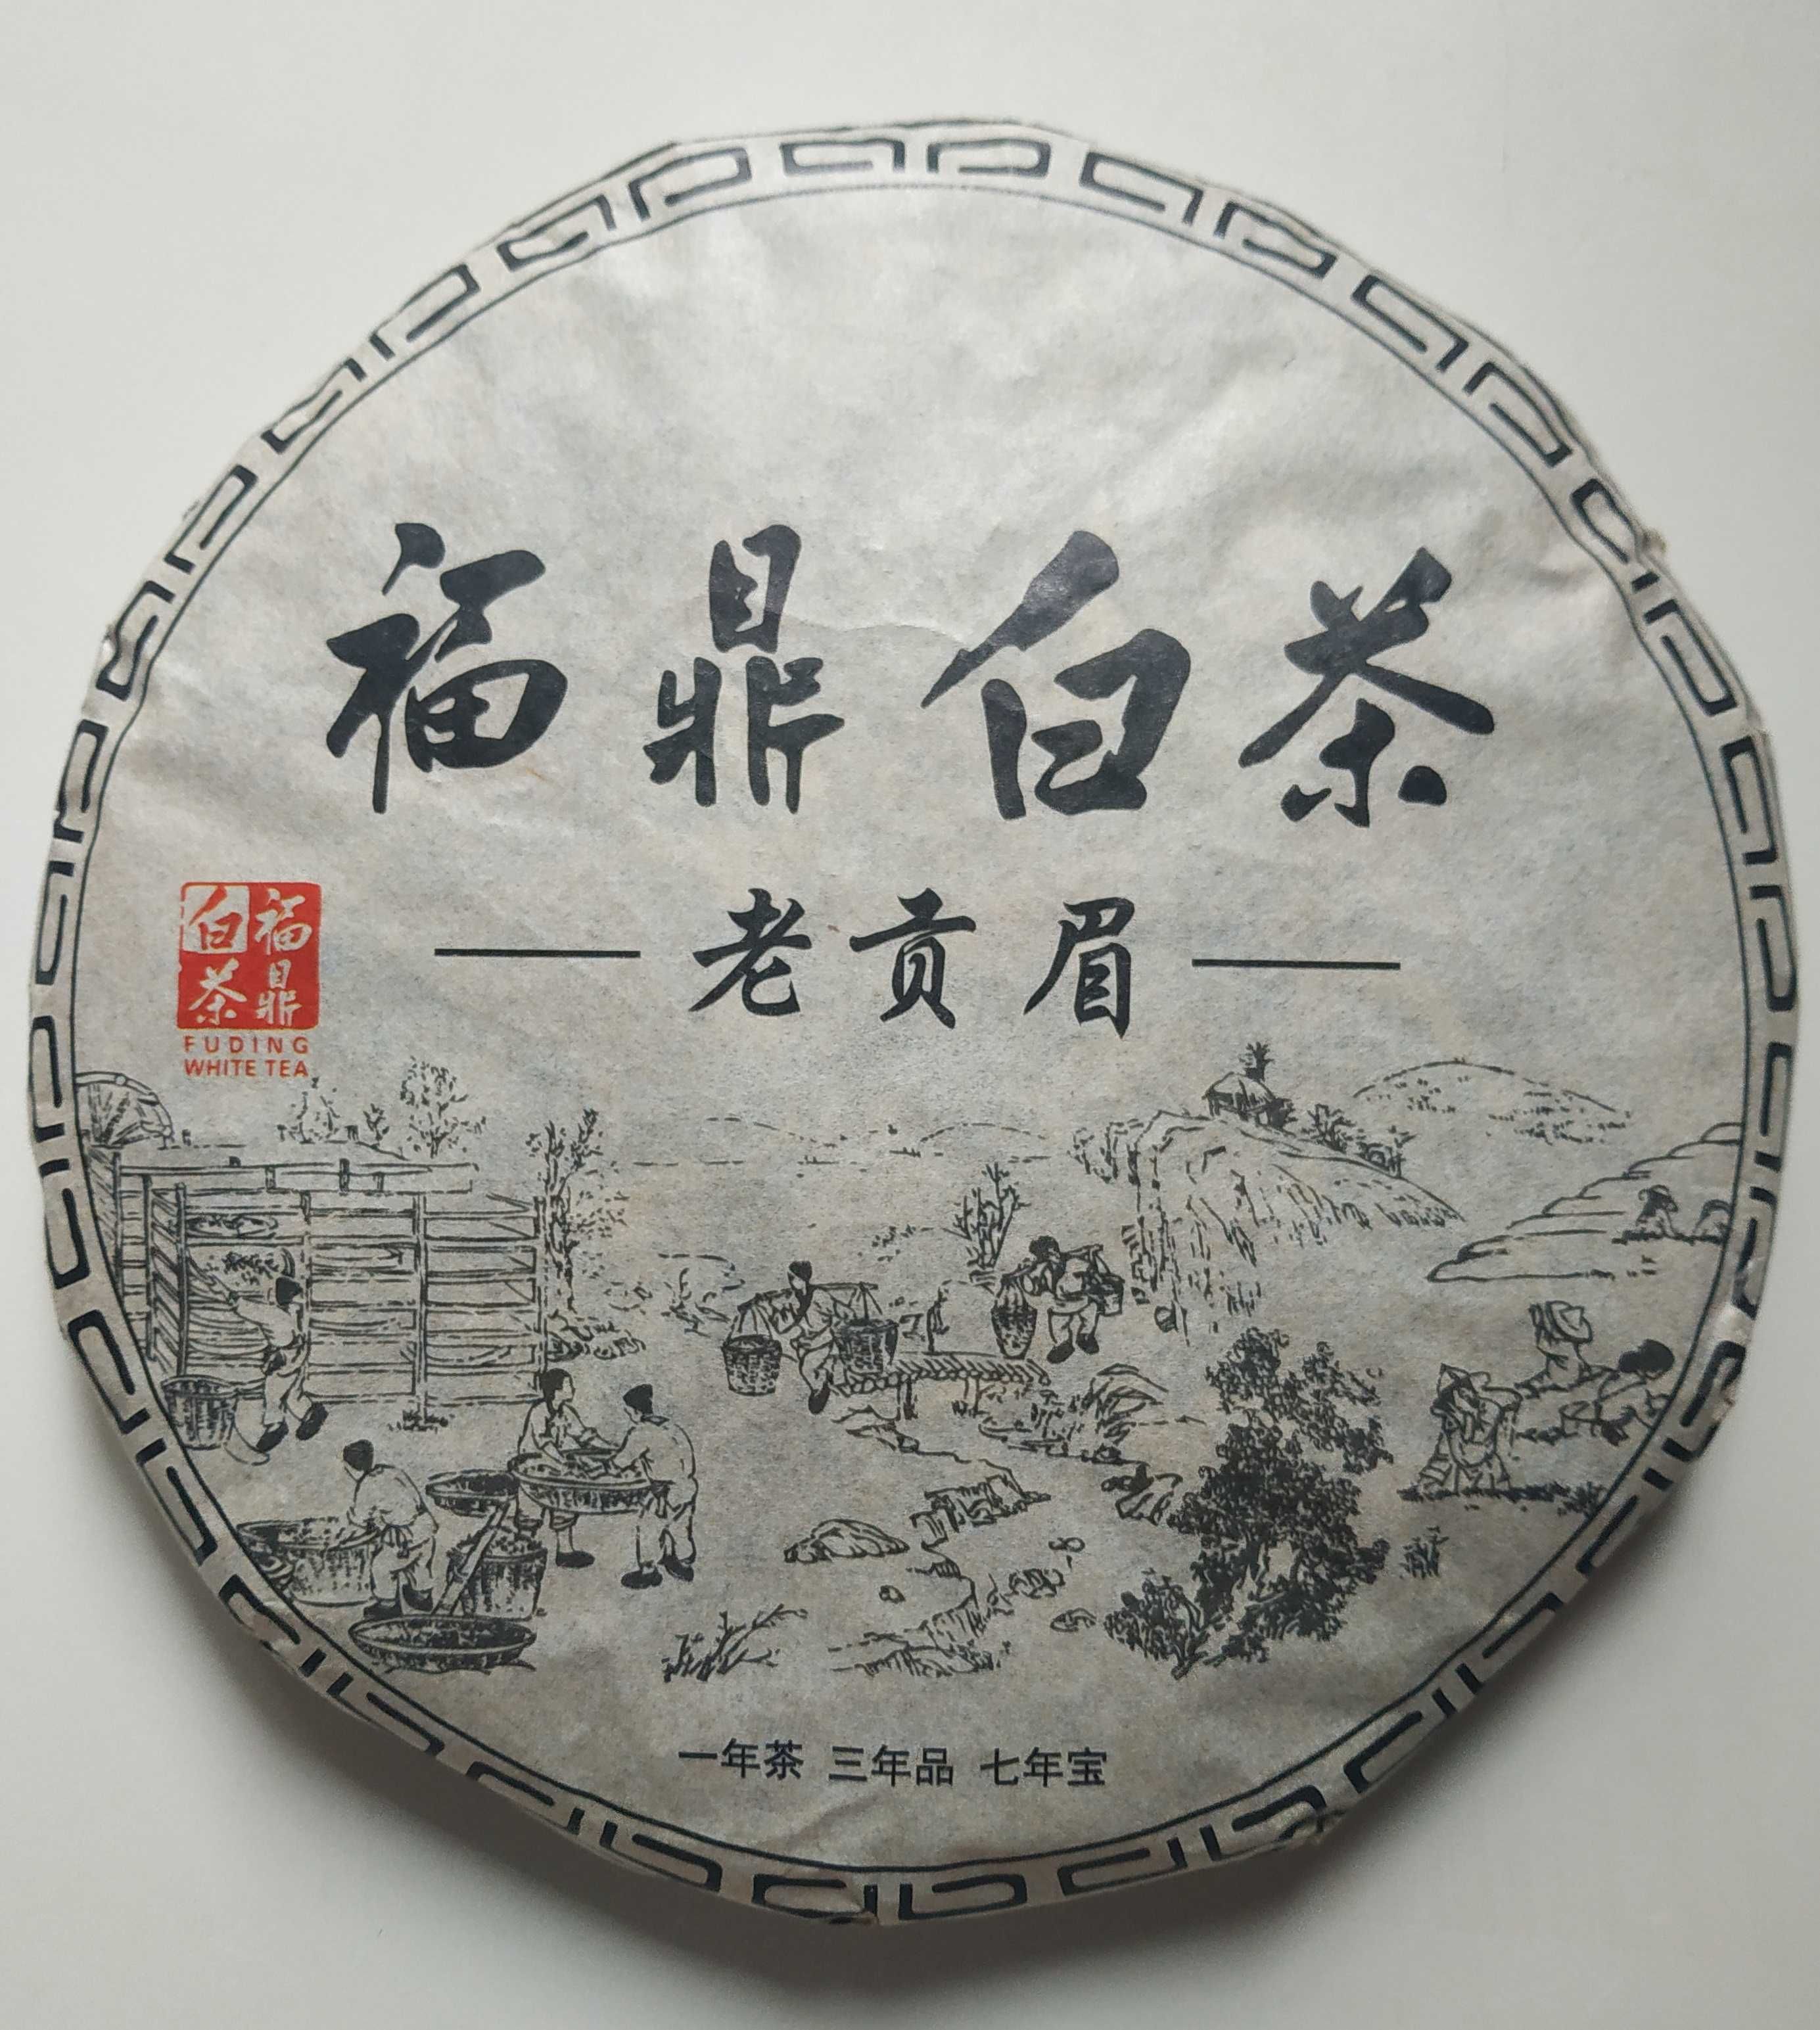 Китайский белый чай / белый пуэр "Лао Гун Мэй" 300 грамм